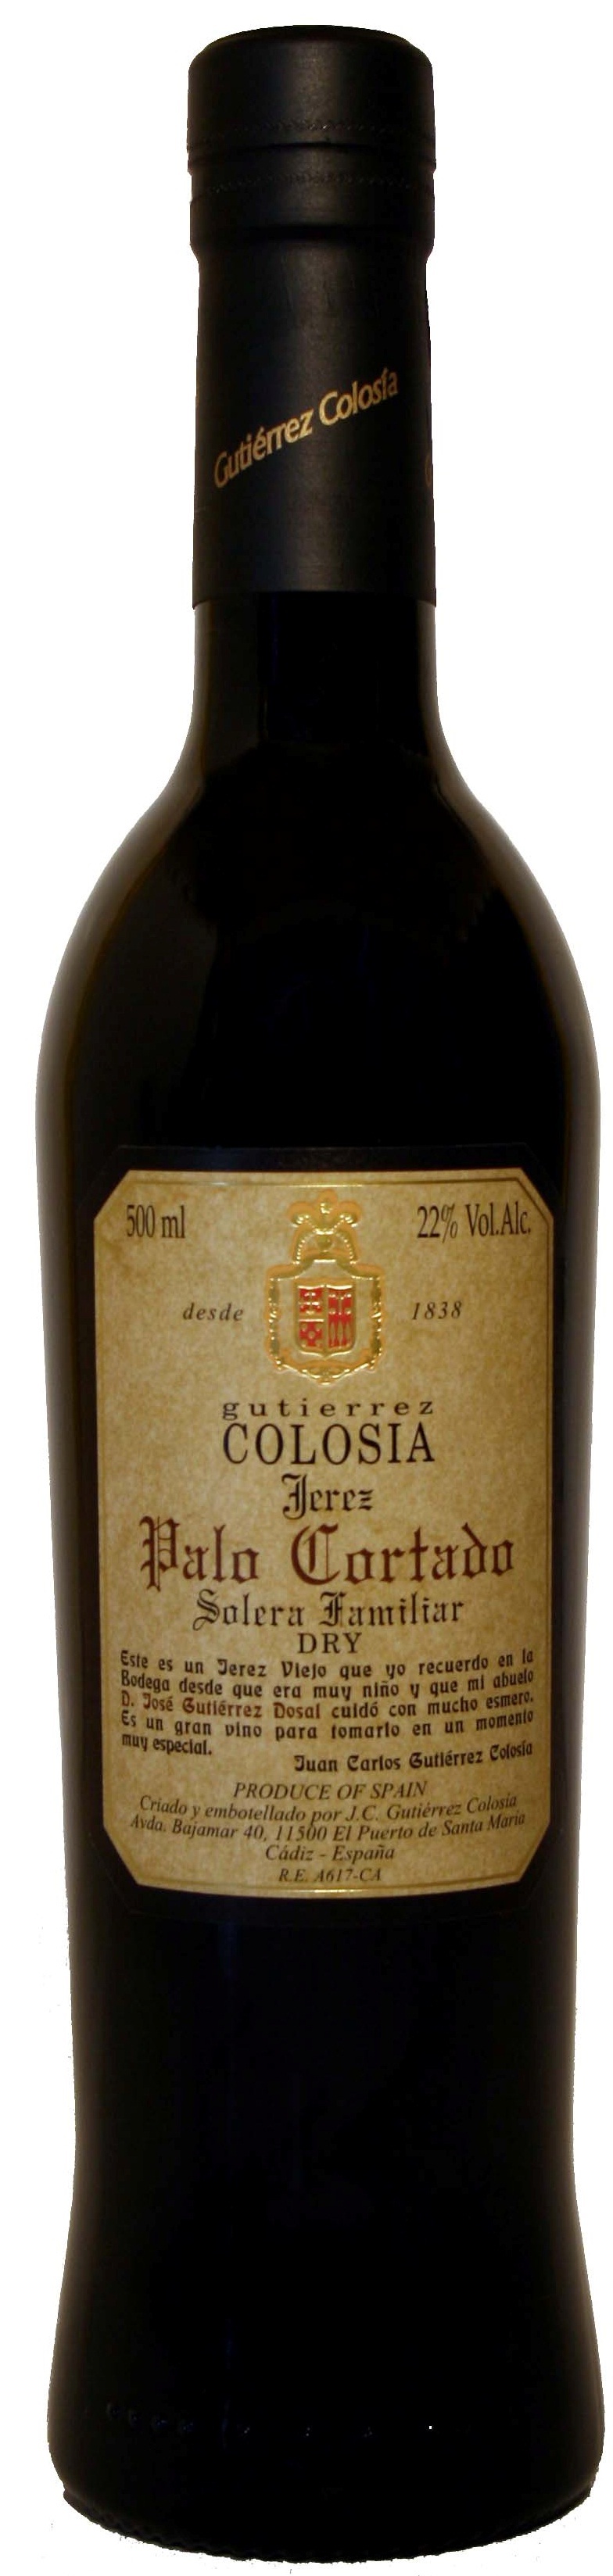 Image of Wine bottle Colosía Solera Familiar Palo Cortado